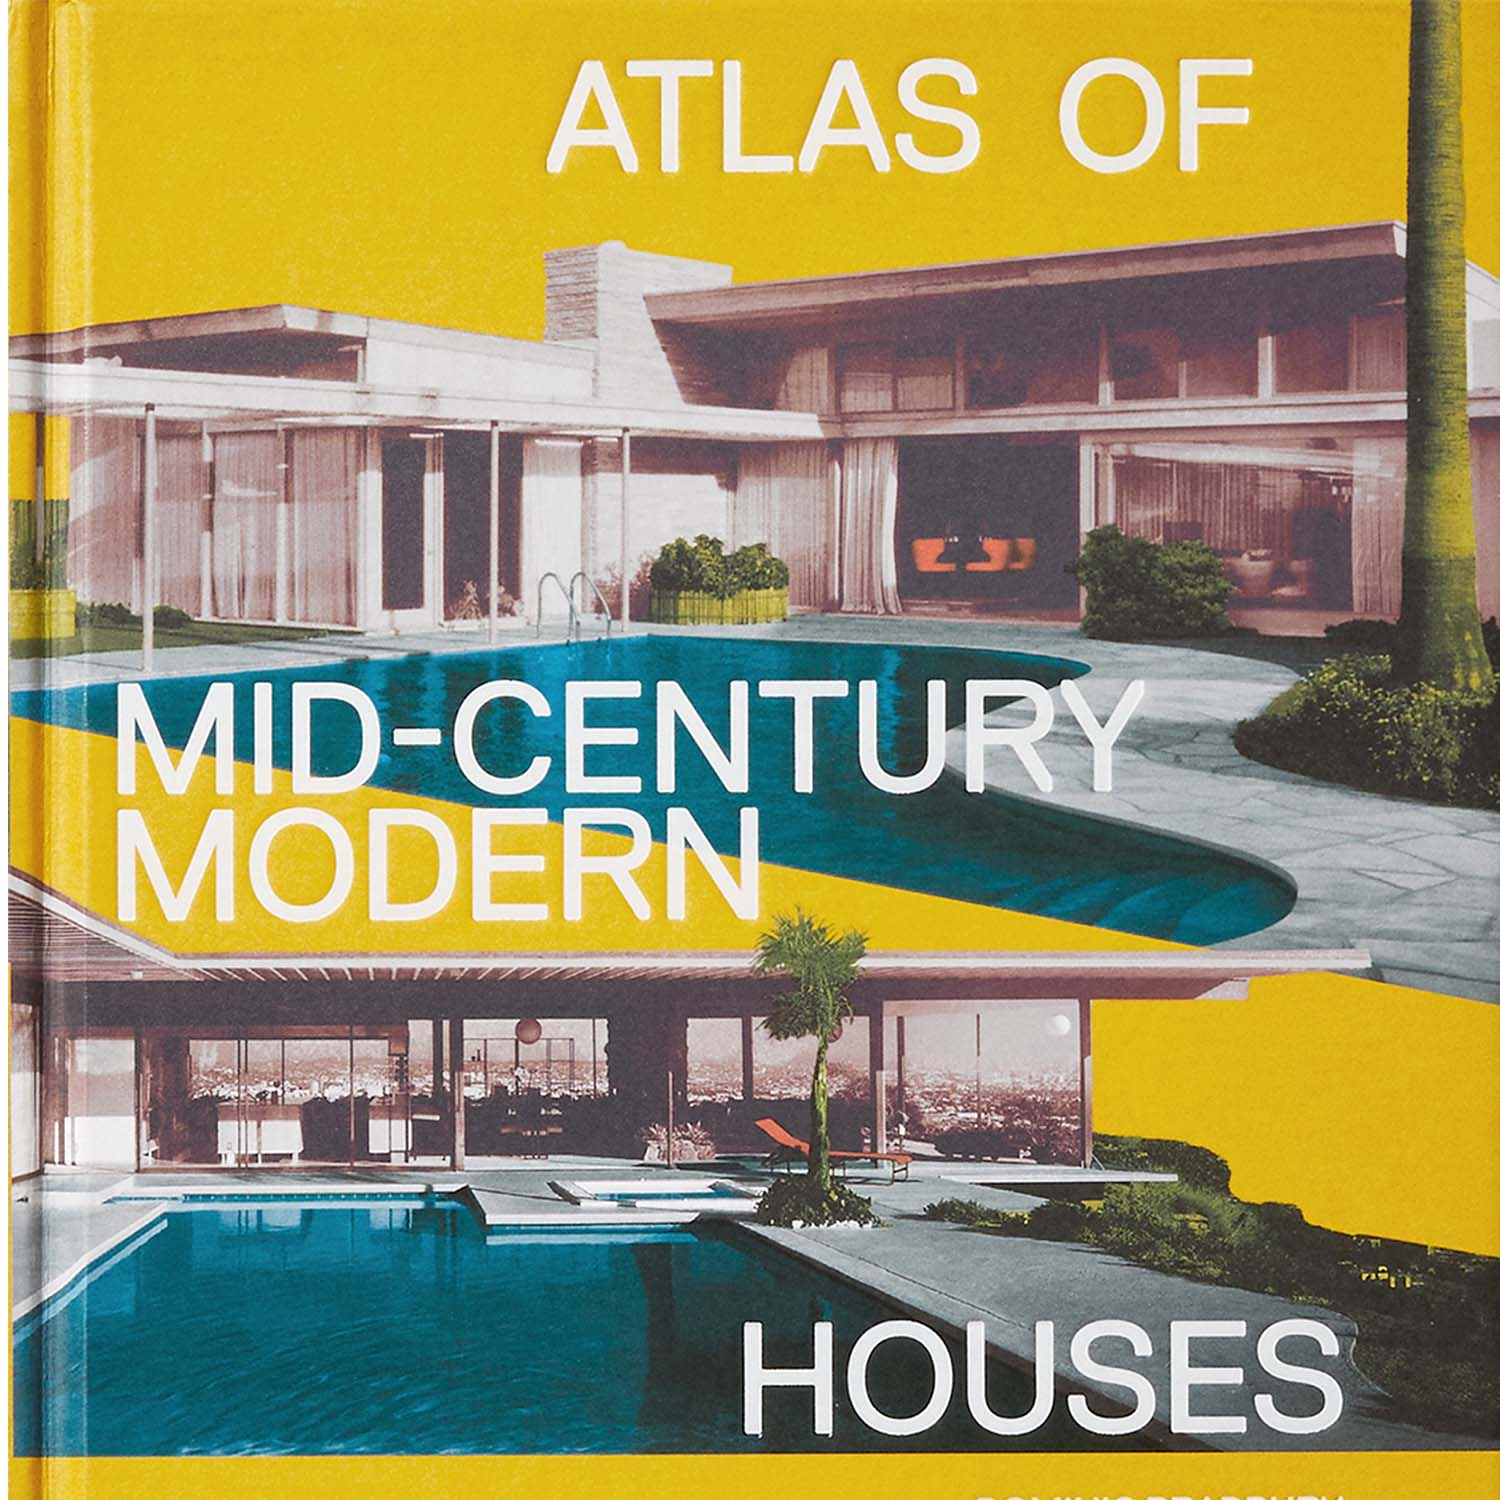 صورة أطلس المنازل الحديثة في منتصف القرن
